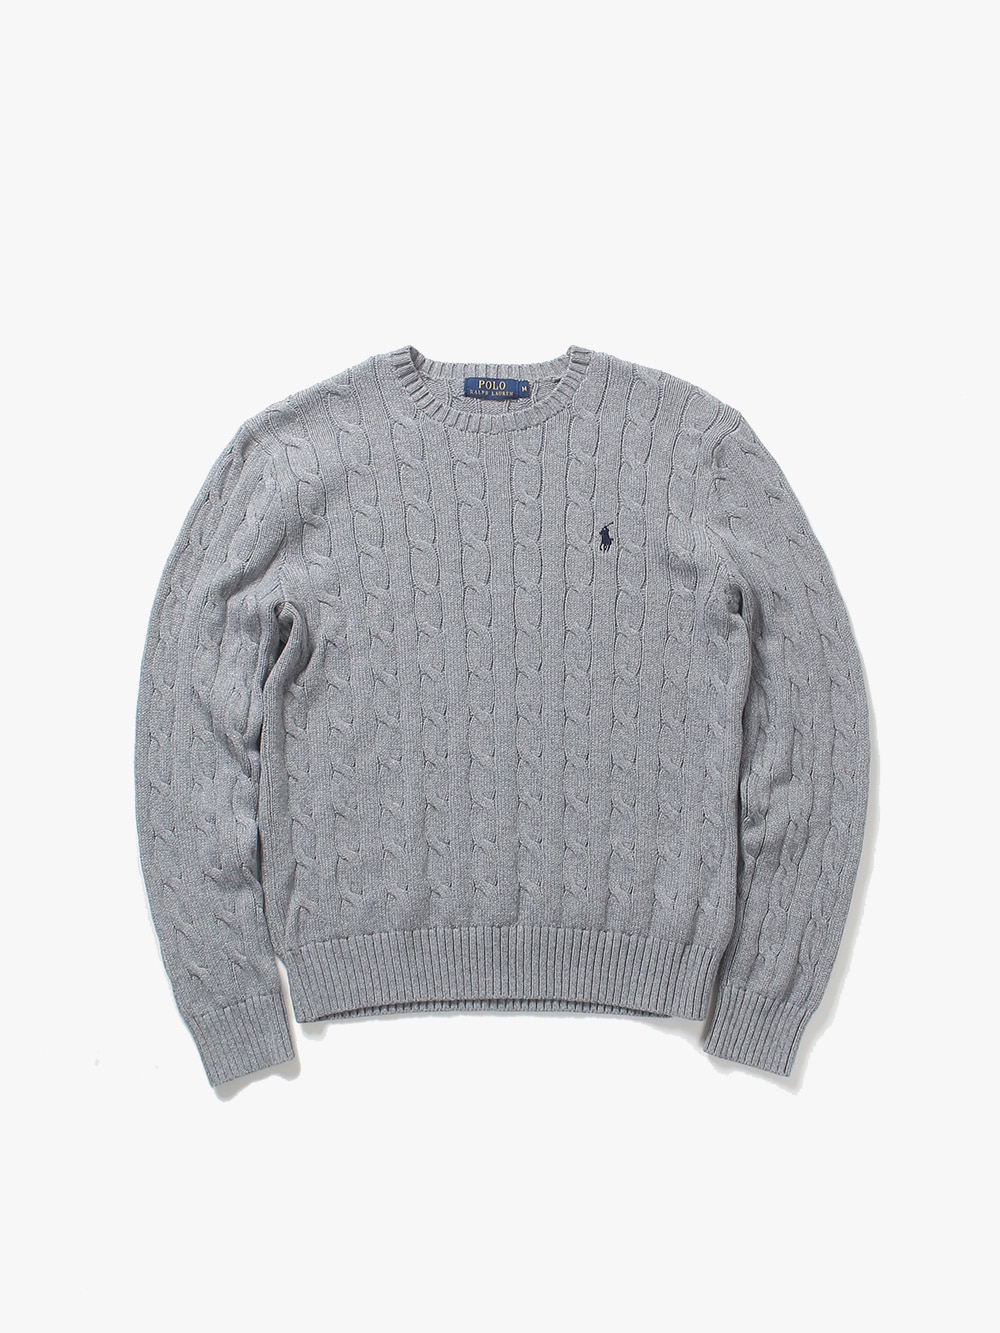 [ M ] Polo Ralph Lauren Sweater (6440)